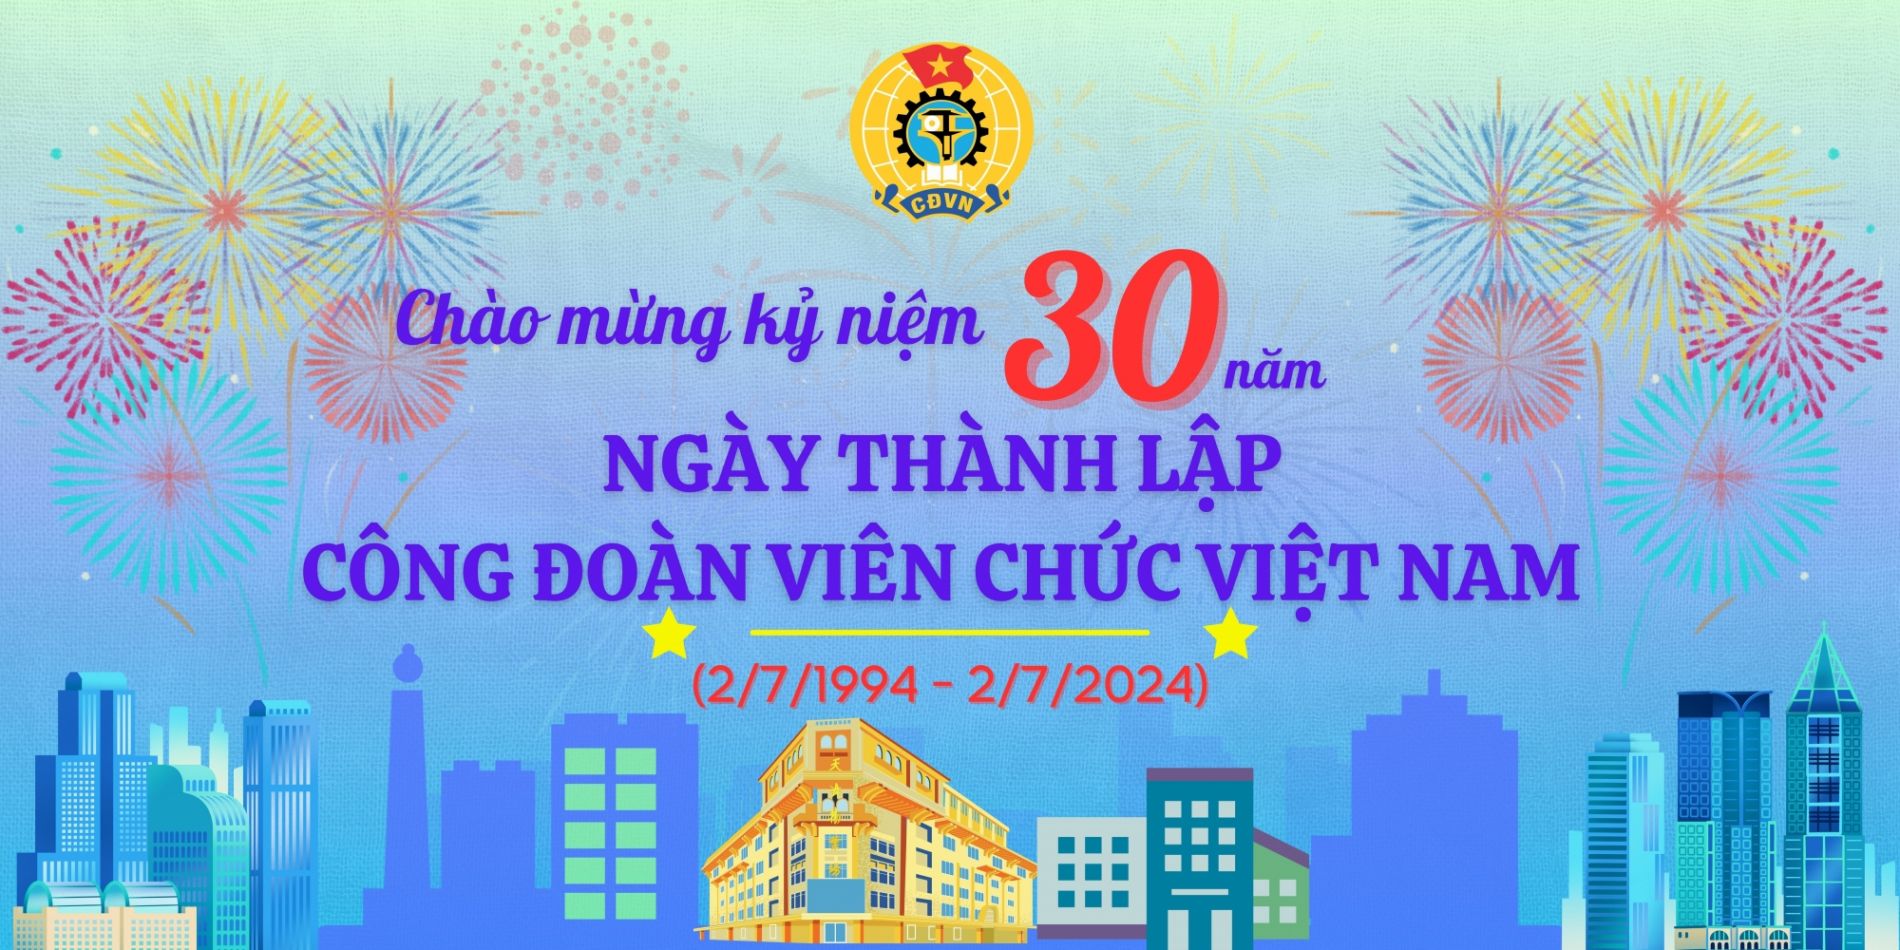 5 hoạt động kỷ niệm 30 năm Ngày thành lập Công đoàn Viên chức Việt Nam (2/7/1994 - 2/7/2024)